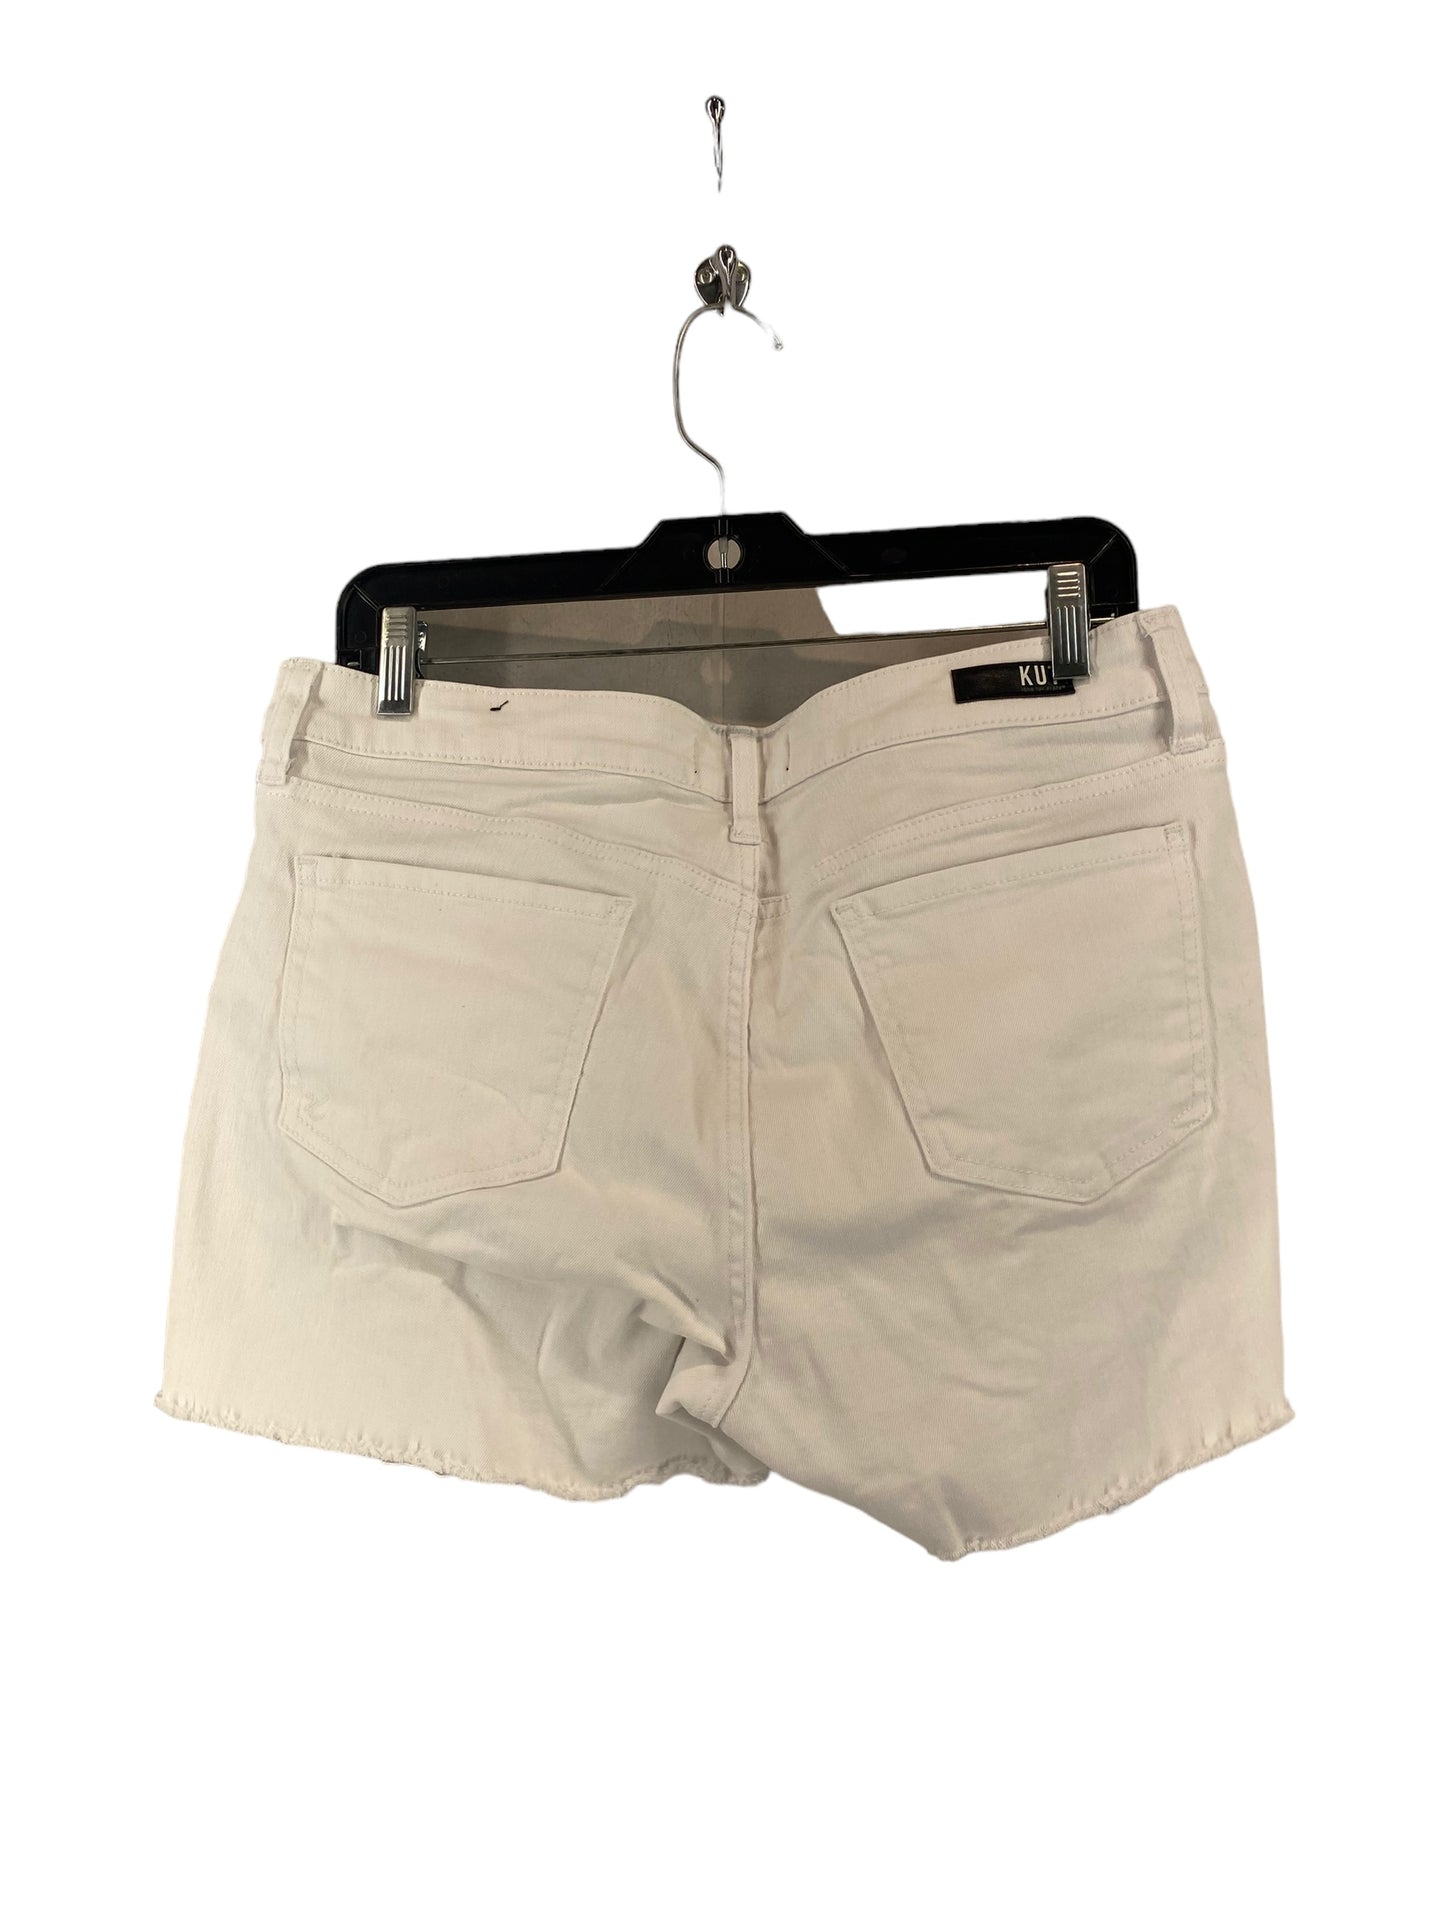 Shorts By Kut  Size: 10